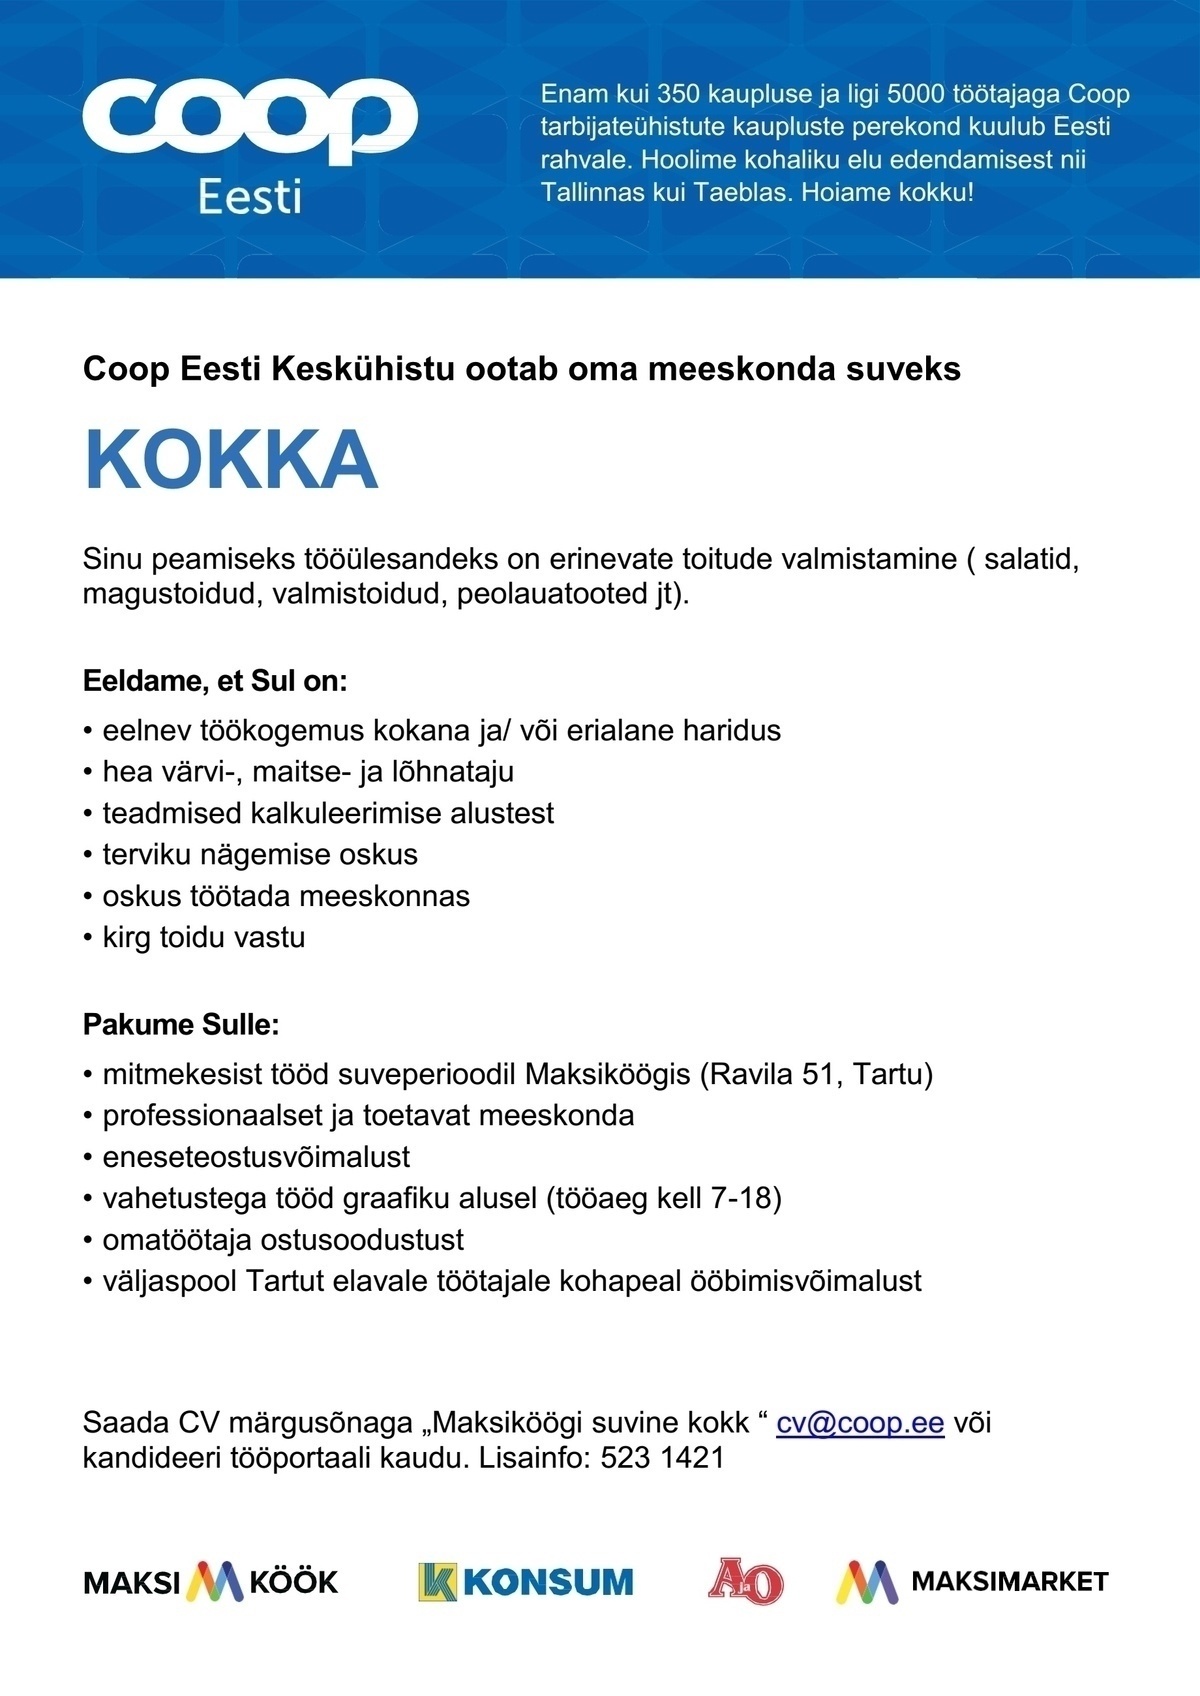 Coop Eesti Keskühistu Suvine kokk (Maksiköök)